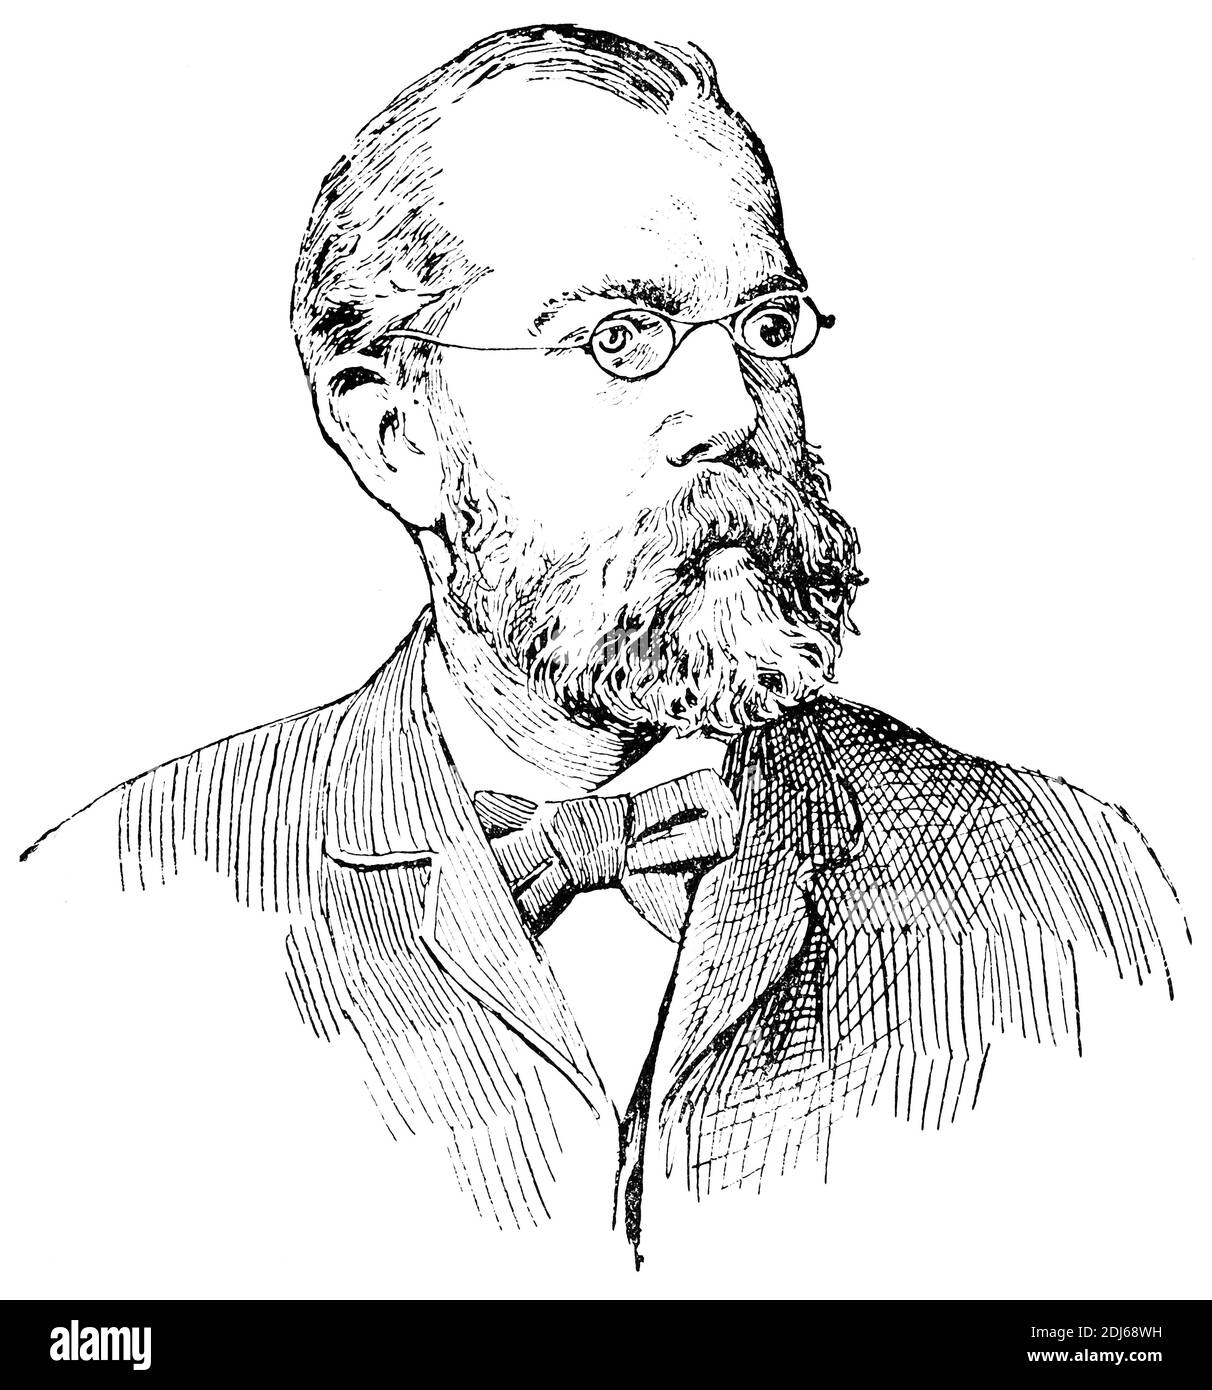 Portrait de Heinrich Hermann Robert Koch - médecin et microbiologiste allemand. Illustration du 19e siècle. Allemagne. Arrière-plan blanc. Banque D'Images